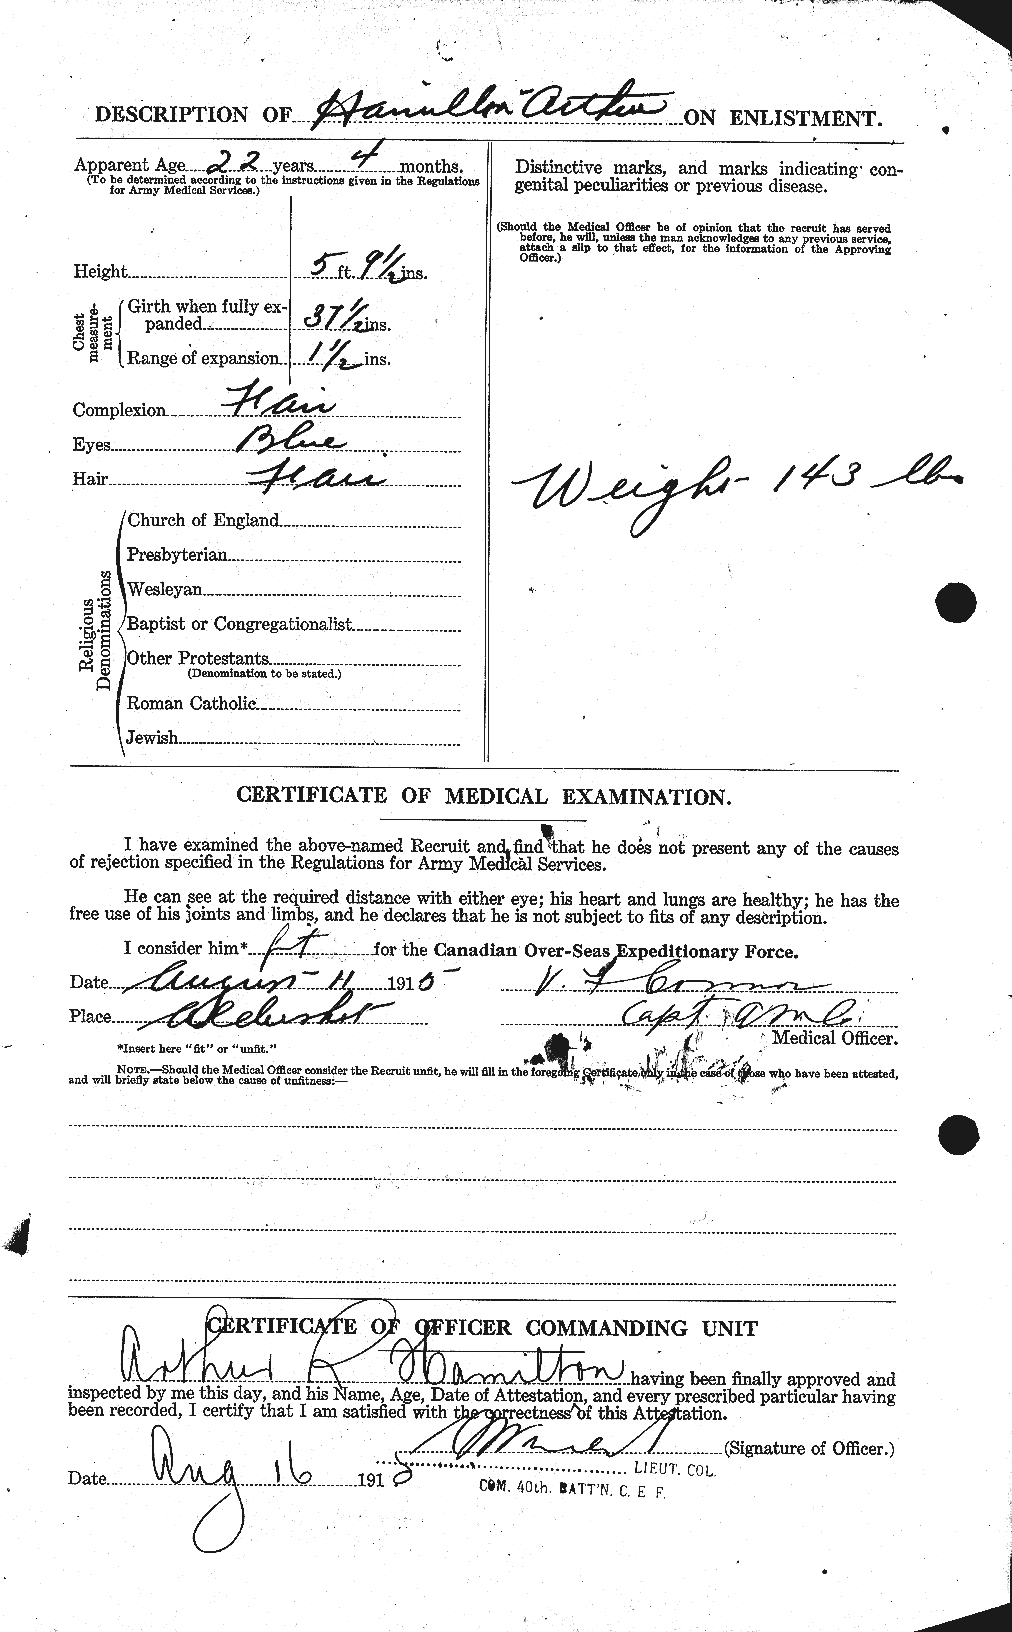 Dossiers du Personnel de la Première Guerre mondiale - CEC 375254b